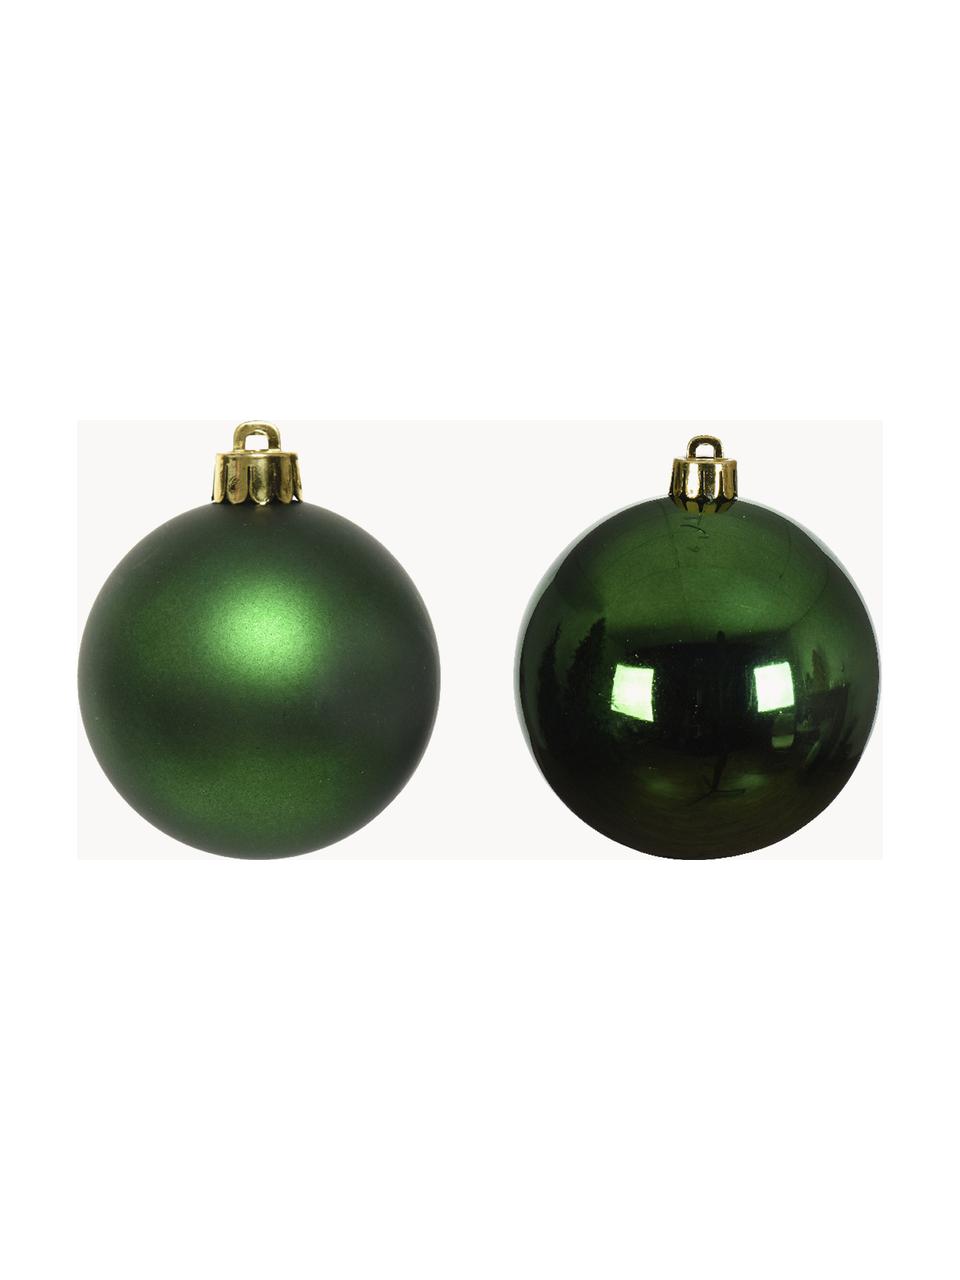 Sada vánočních ozdob lesklých/matných Evergreen, různé velikosti, Tmavě zelená, Ø 10 cm, 4 ks